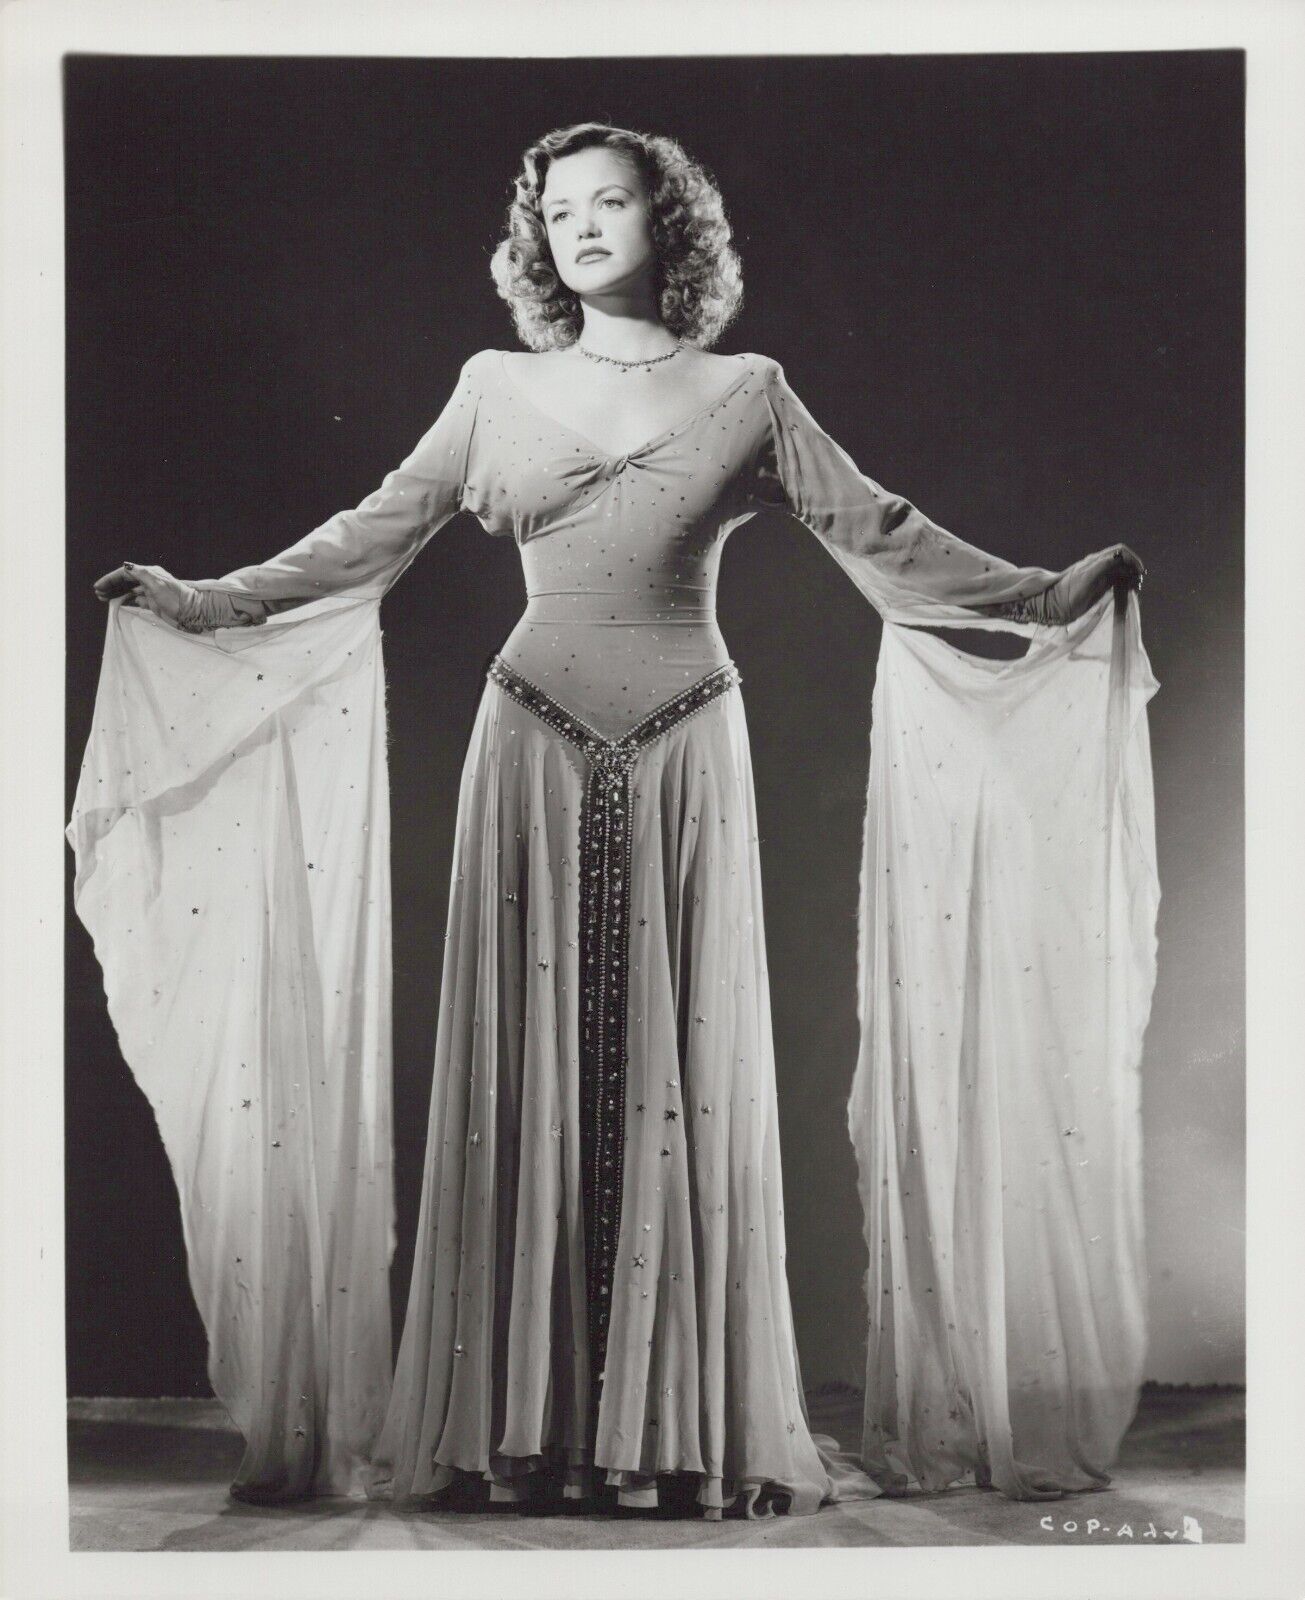 Simone Simon (1940s) ❤ Hollywood Beauty Stylish Glamorous Vintage Photo K 523